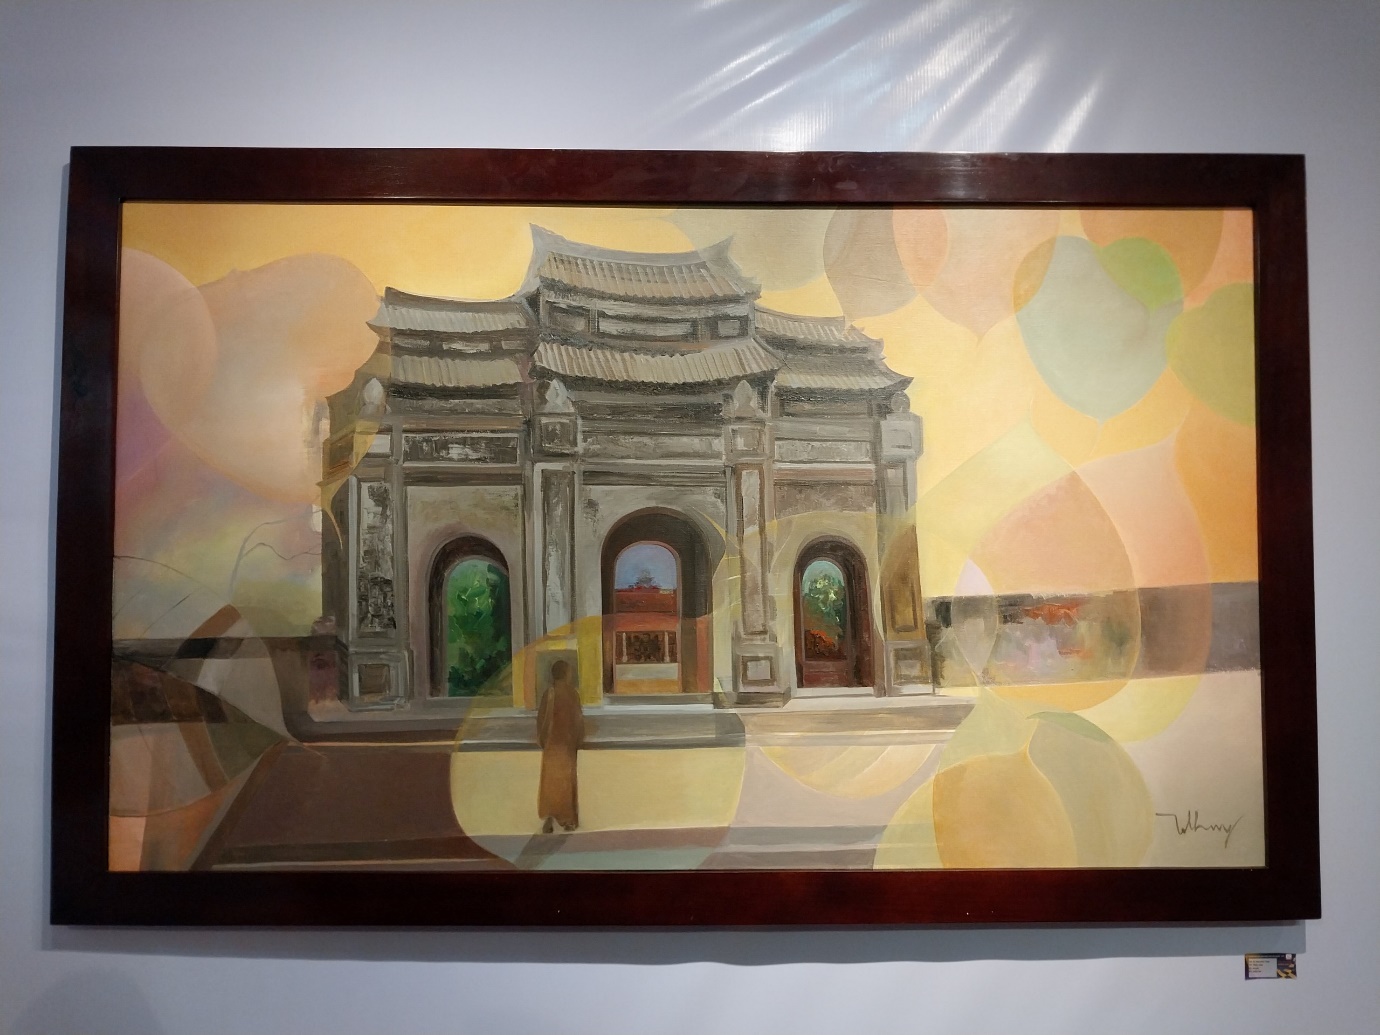 Đến Trung tâm Văn hóa Phật giáo Liễu Quán xem triển lãm ‘Hoàn gia lý’ - 8